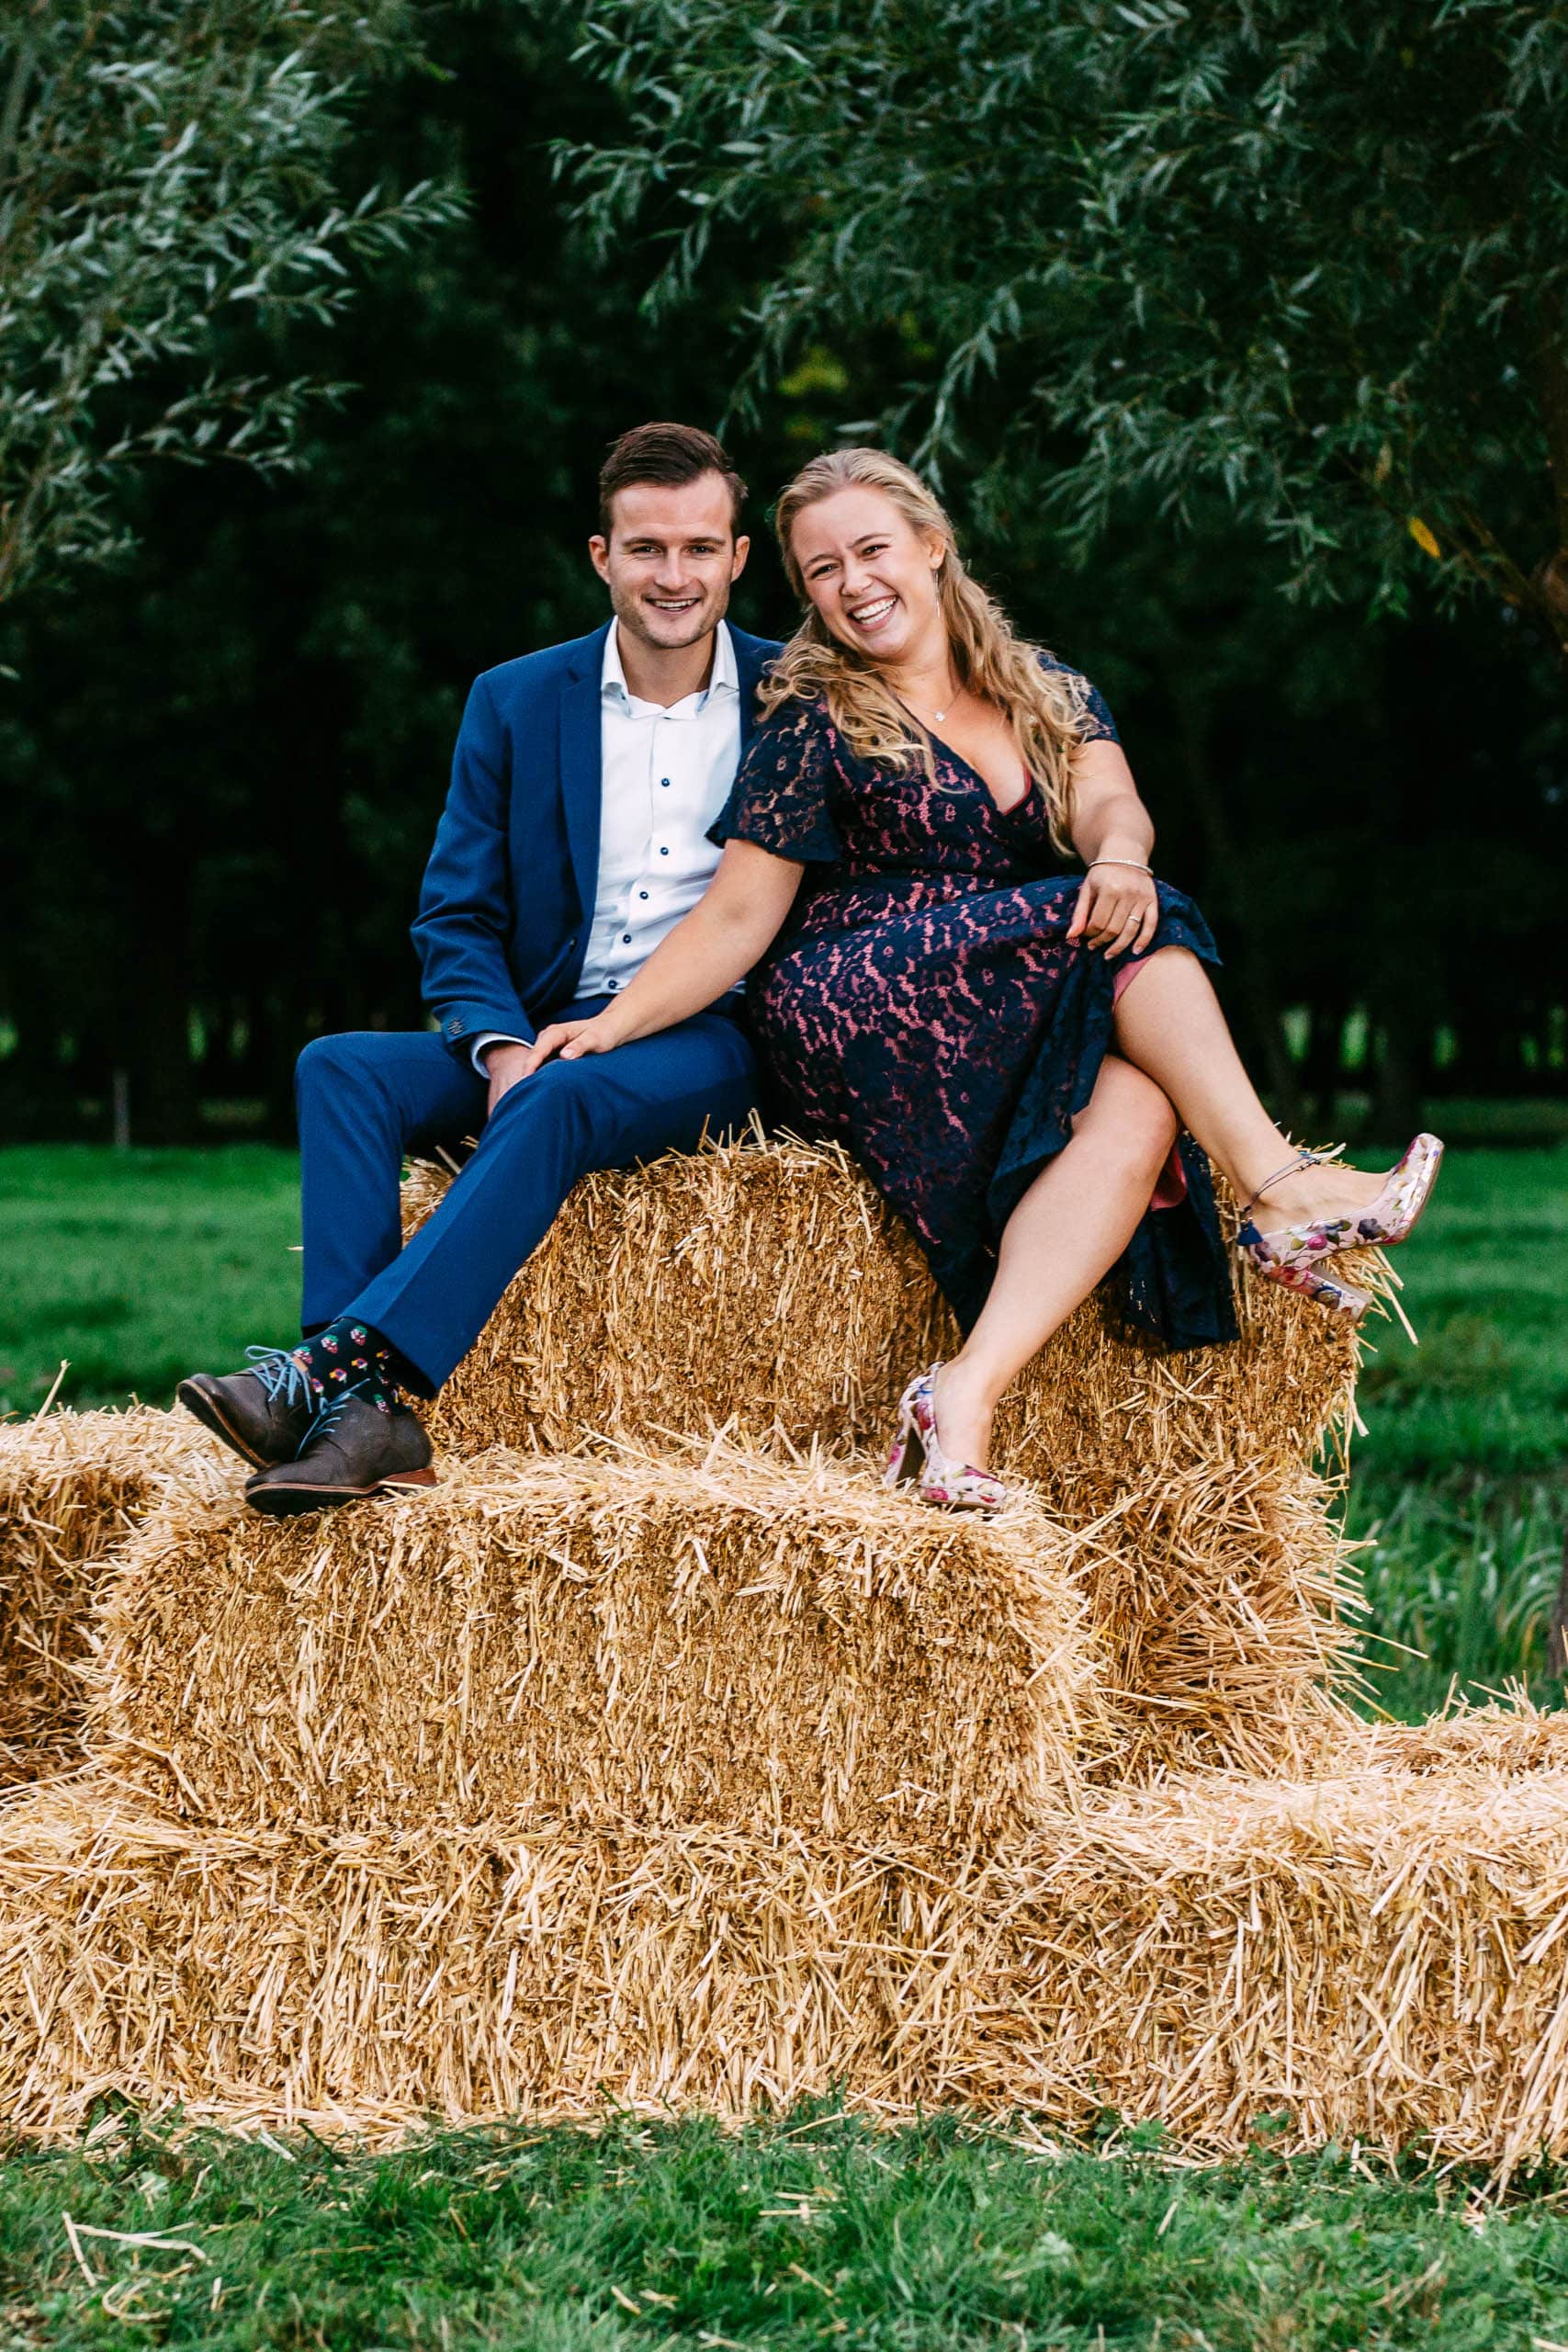 A couple sitting in a field on hay bales, dressed in Tenue de ville attire.